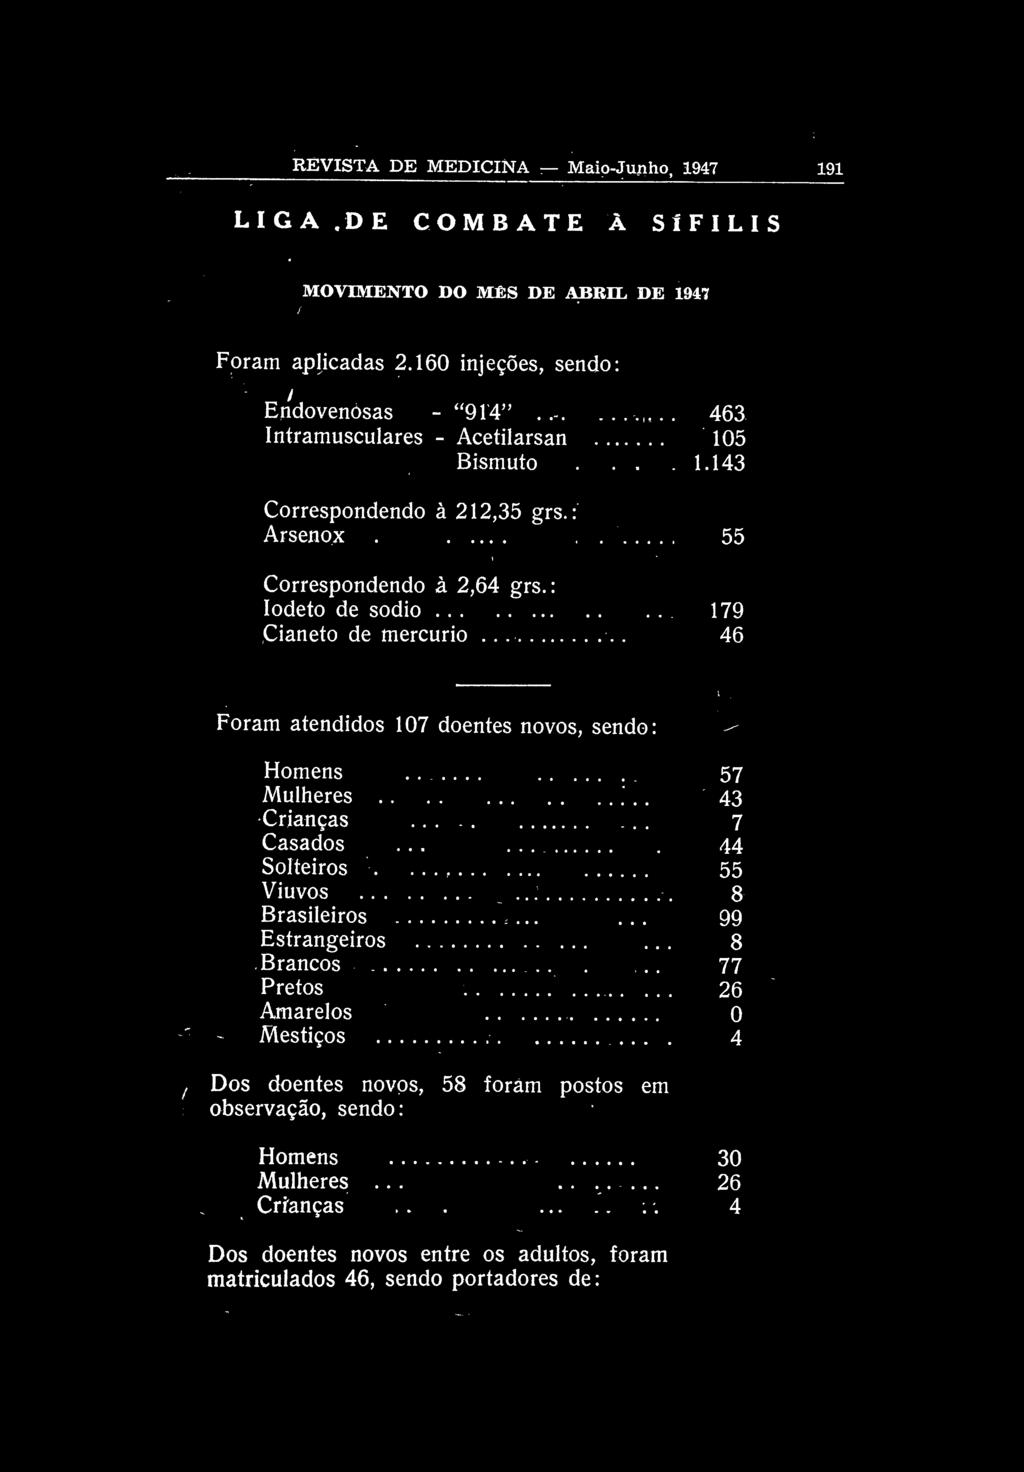 REVISTA DE MEDICINA Maio-Junho, 1947 191 LIGA DE COMBATE À SÍFILIS MOVIMENTO DO MÊS DE ABRIL DE 1947 Foram aplicadas 2.160 injeções, sendo: Endovenòsas -"914"..-. 463 Intramusculares - Acetilarsan 105 Bismuto.